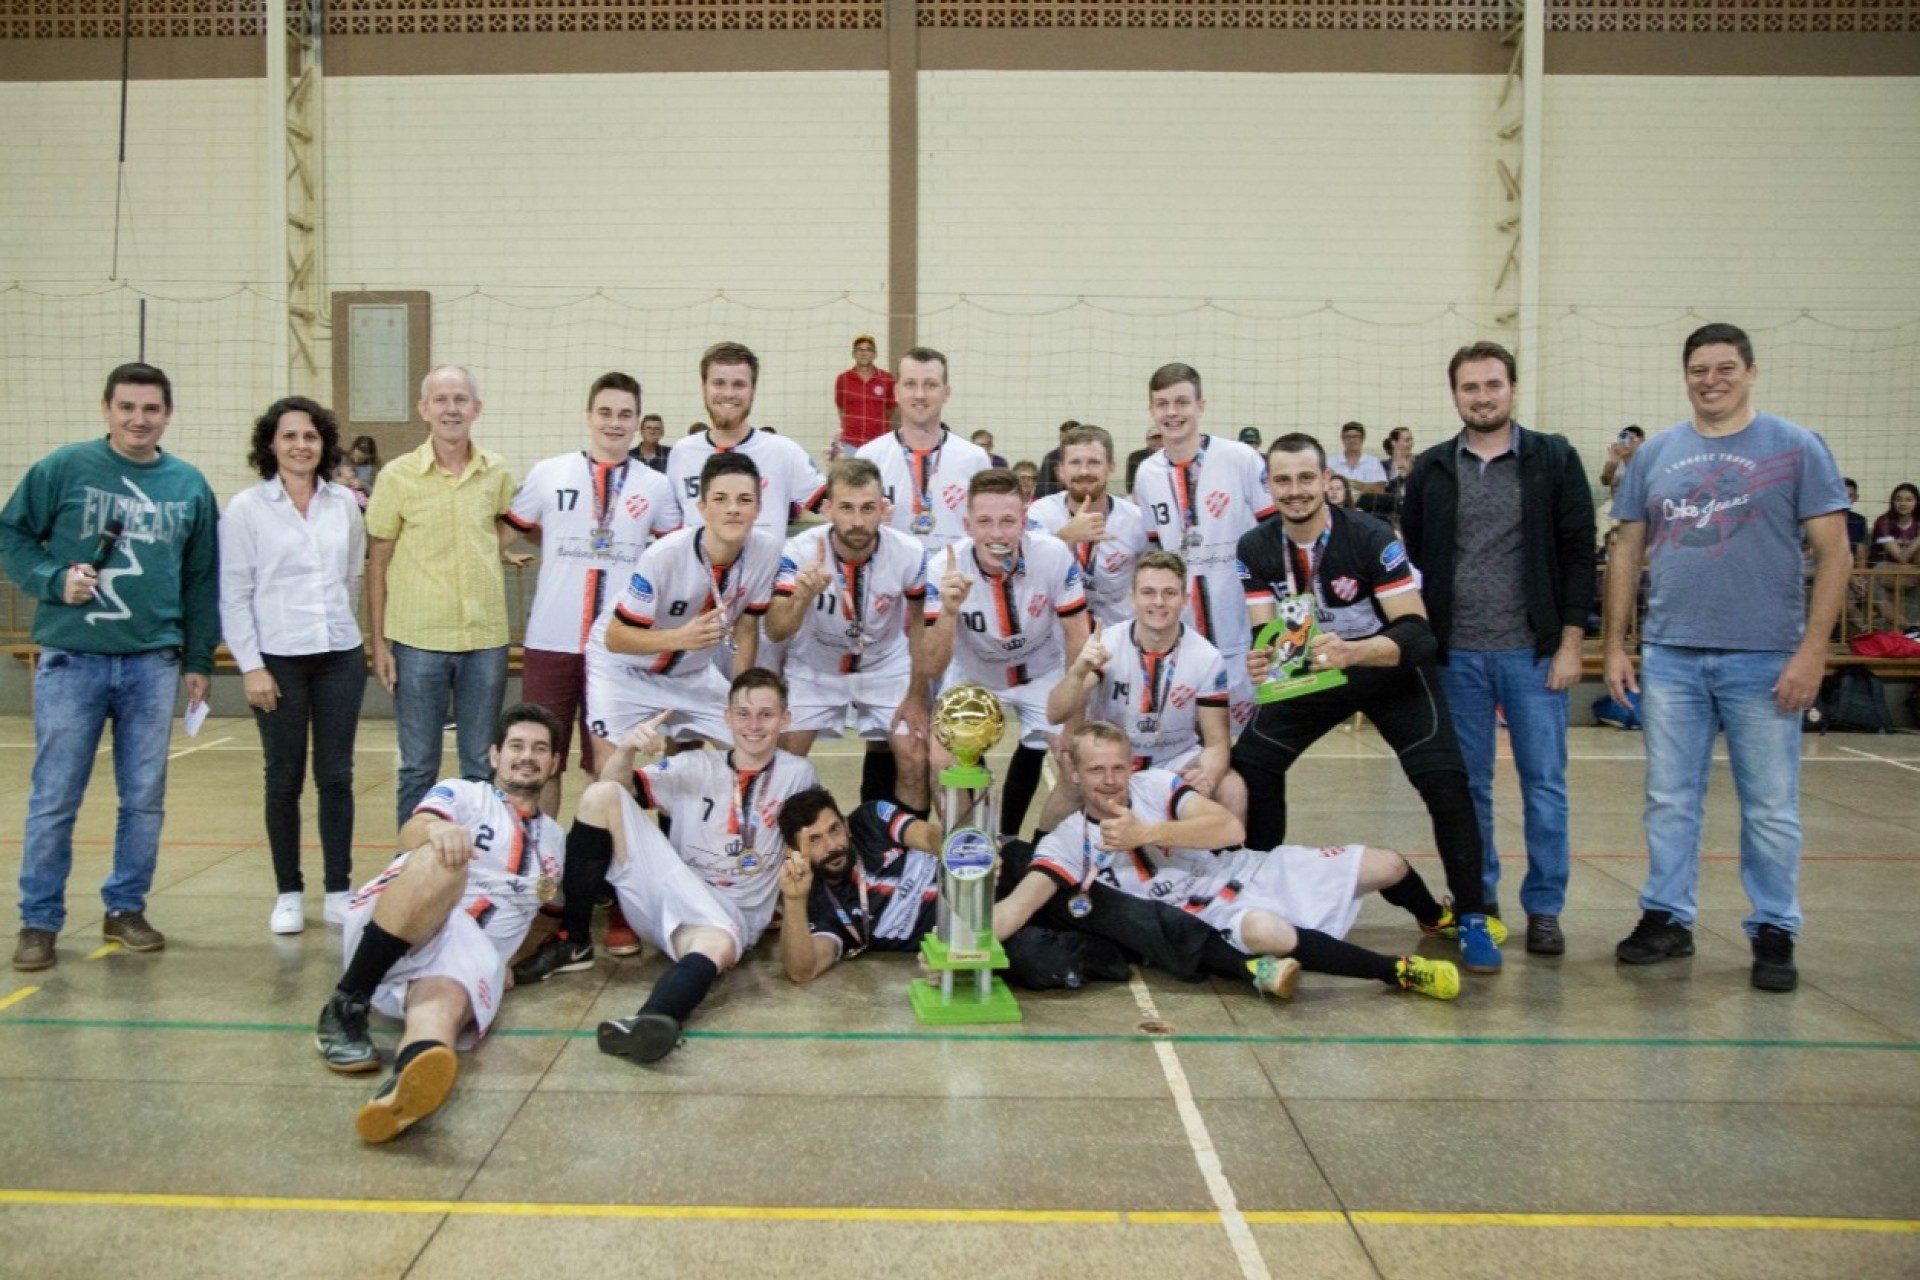 Bar dos Amigos/Paulista Confecções conquista o título do Comunitário de Futsal em Dom Armando